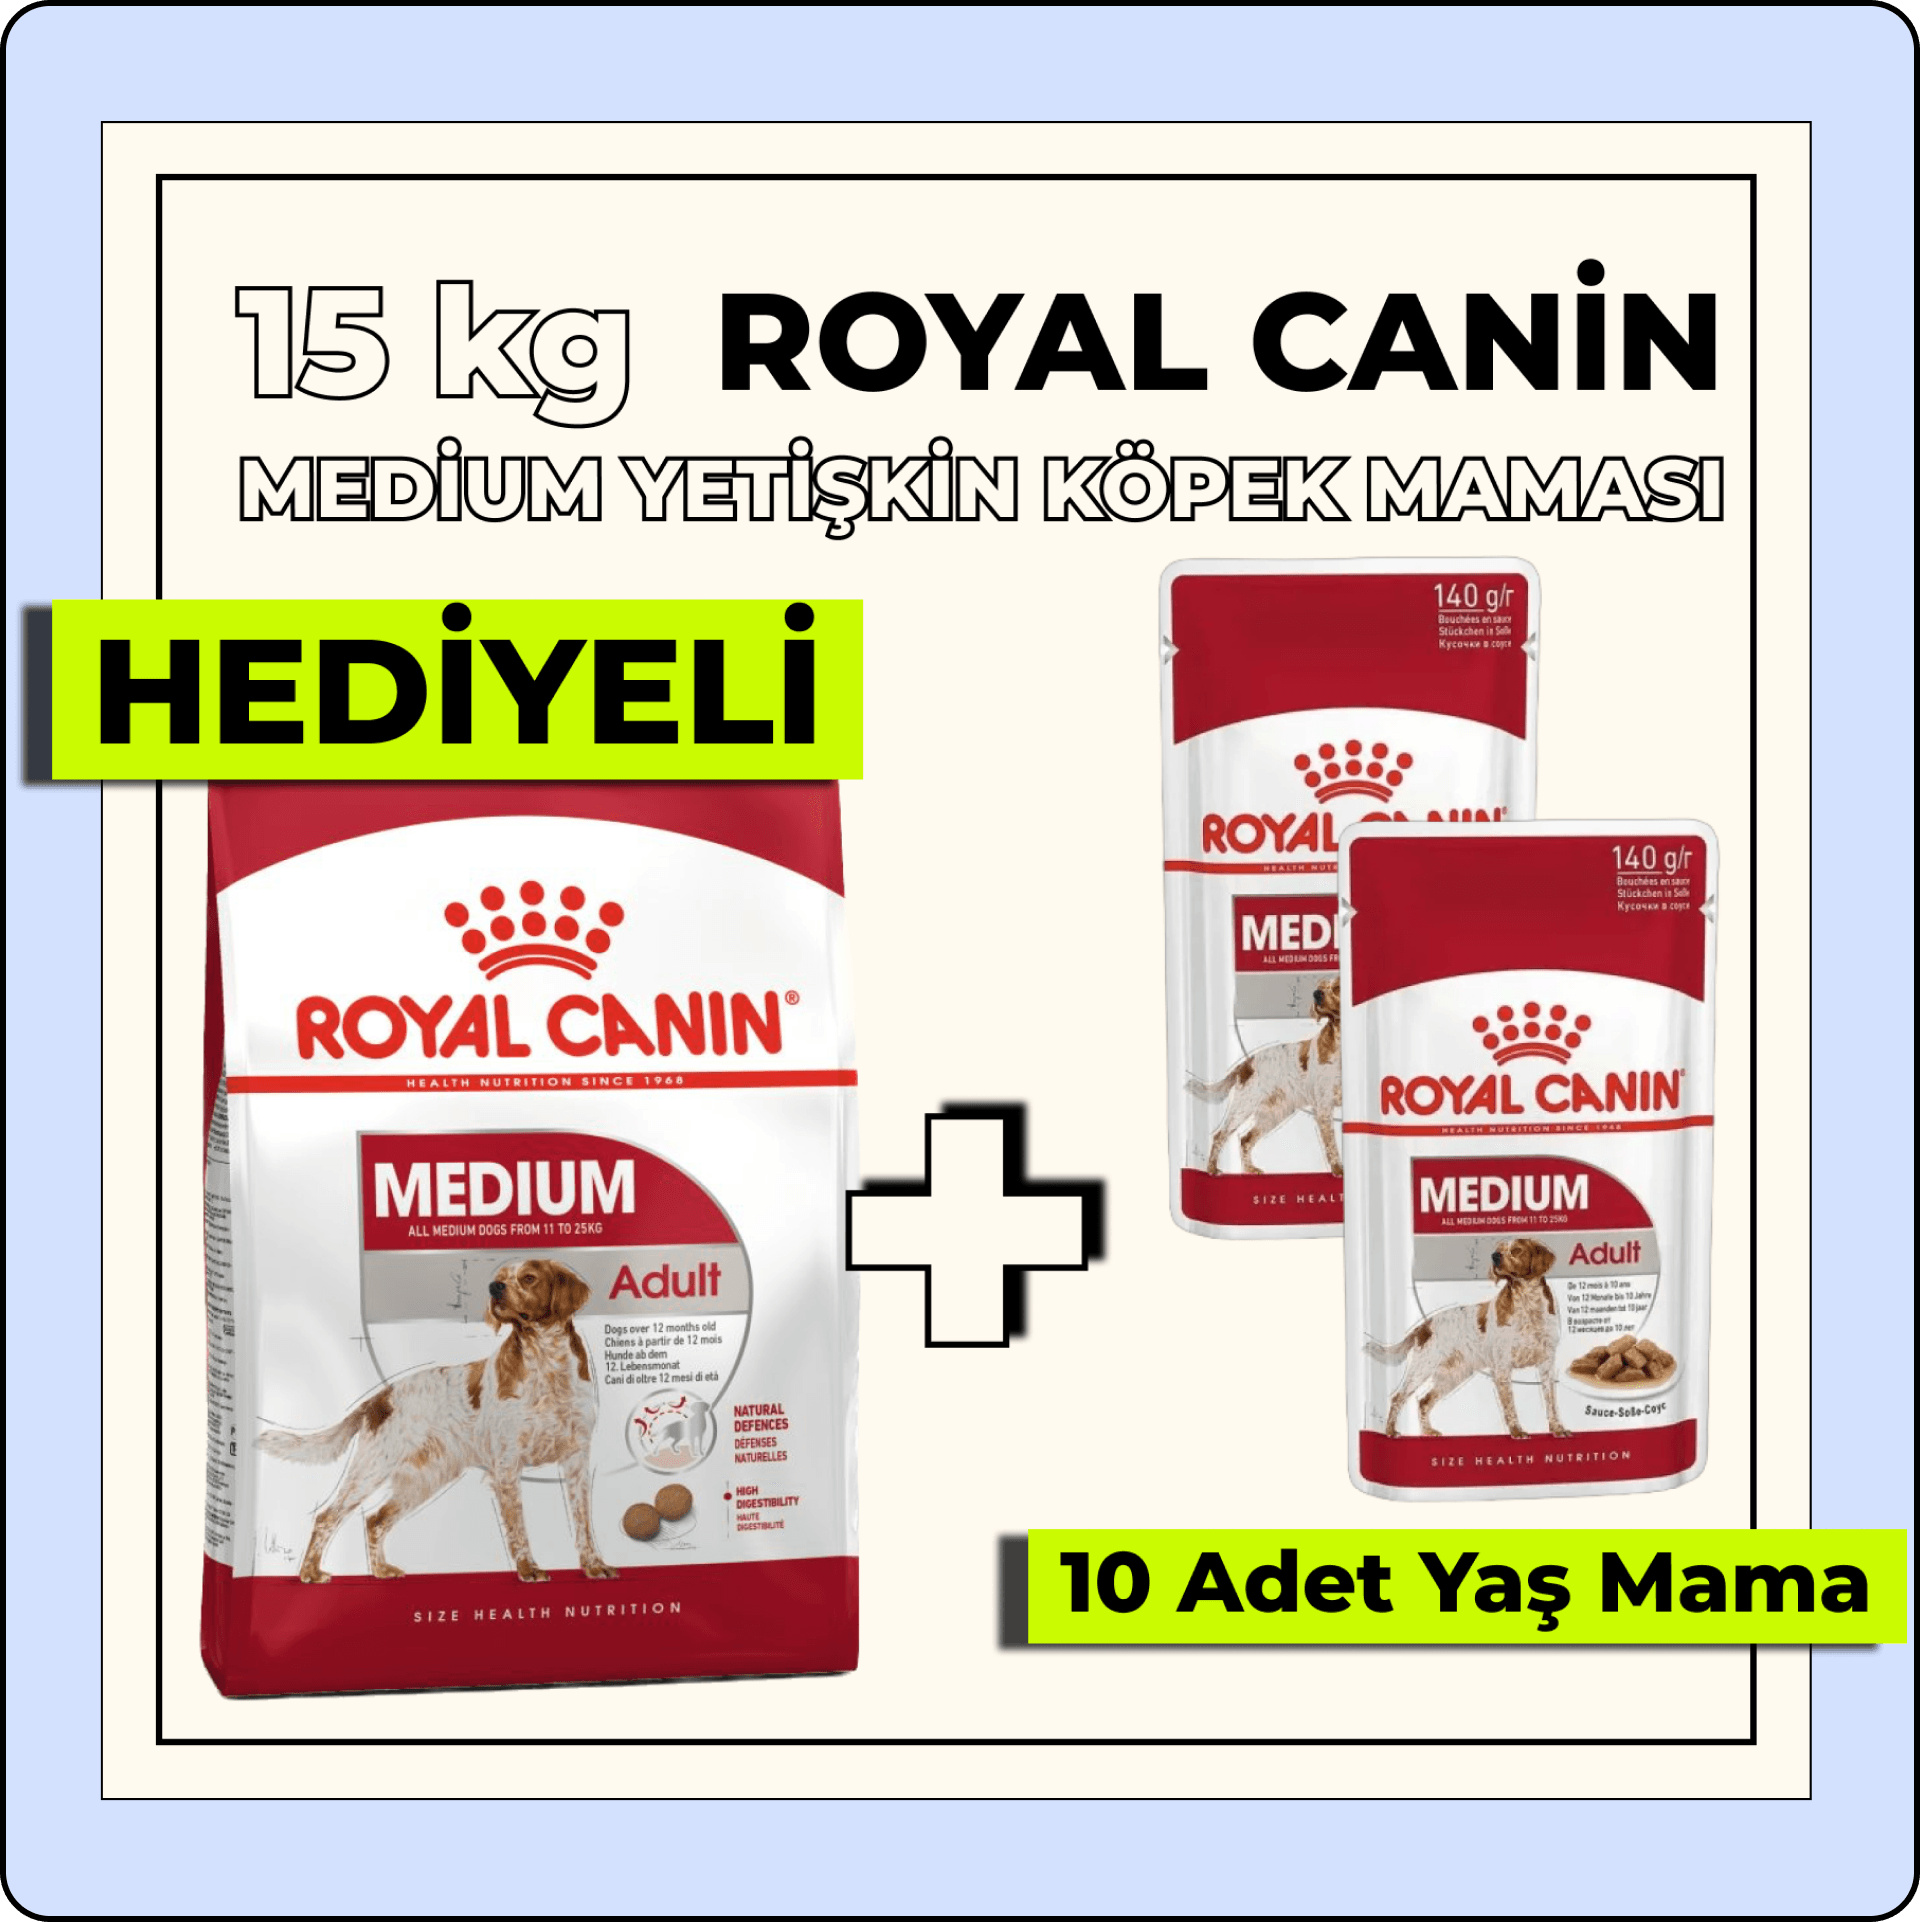 Royal Canin Medium Orta Irk Yetişkin Köpek Maması 15 kg